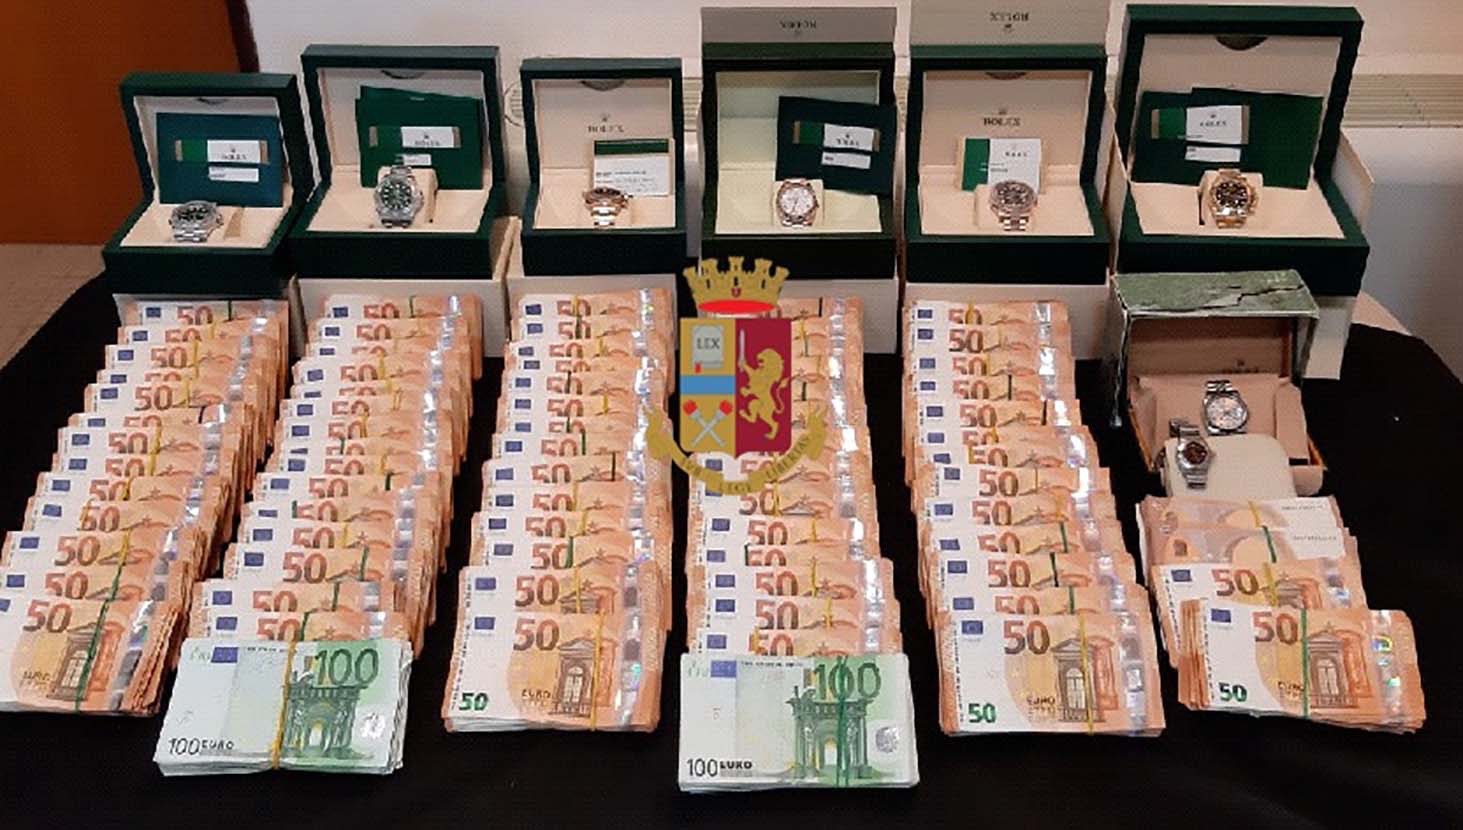 Napoli, trovato con 8 orologi di valore e 378mila euro in contanti: arrestato